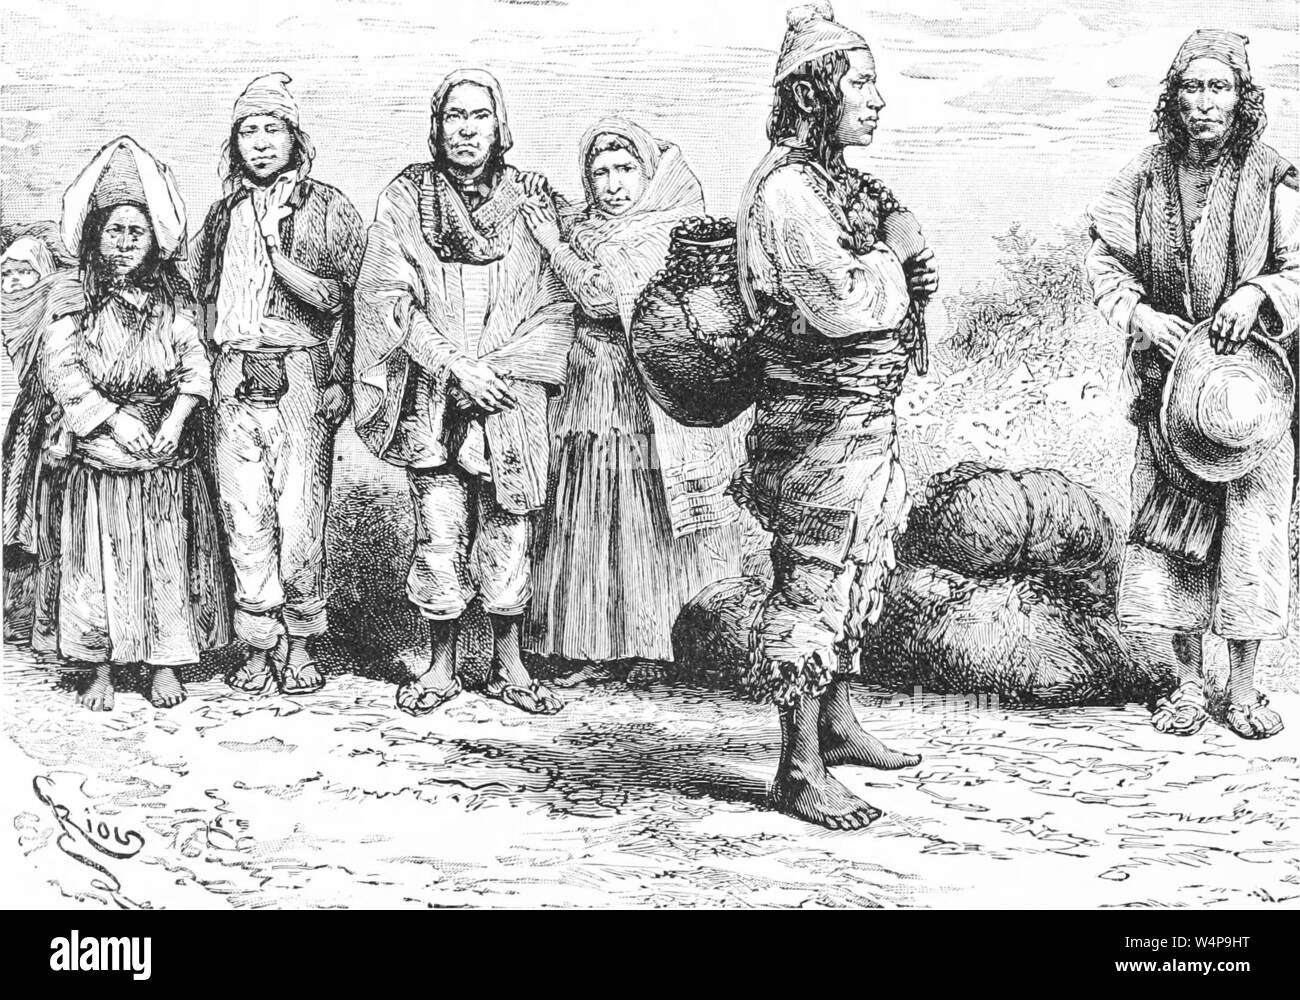 Dessin gravé de la tribu Quechua et Aymara, gens du livre 'Ridpath's histoire universelle de l' de John Clark Ridpath, 1897. Avec la permission de Internet Archive. () Banque D'Images